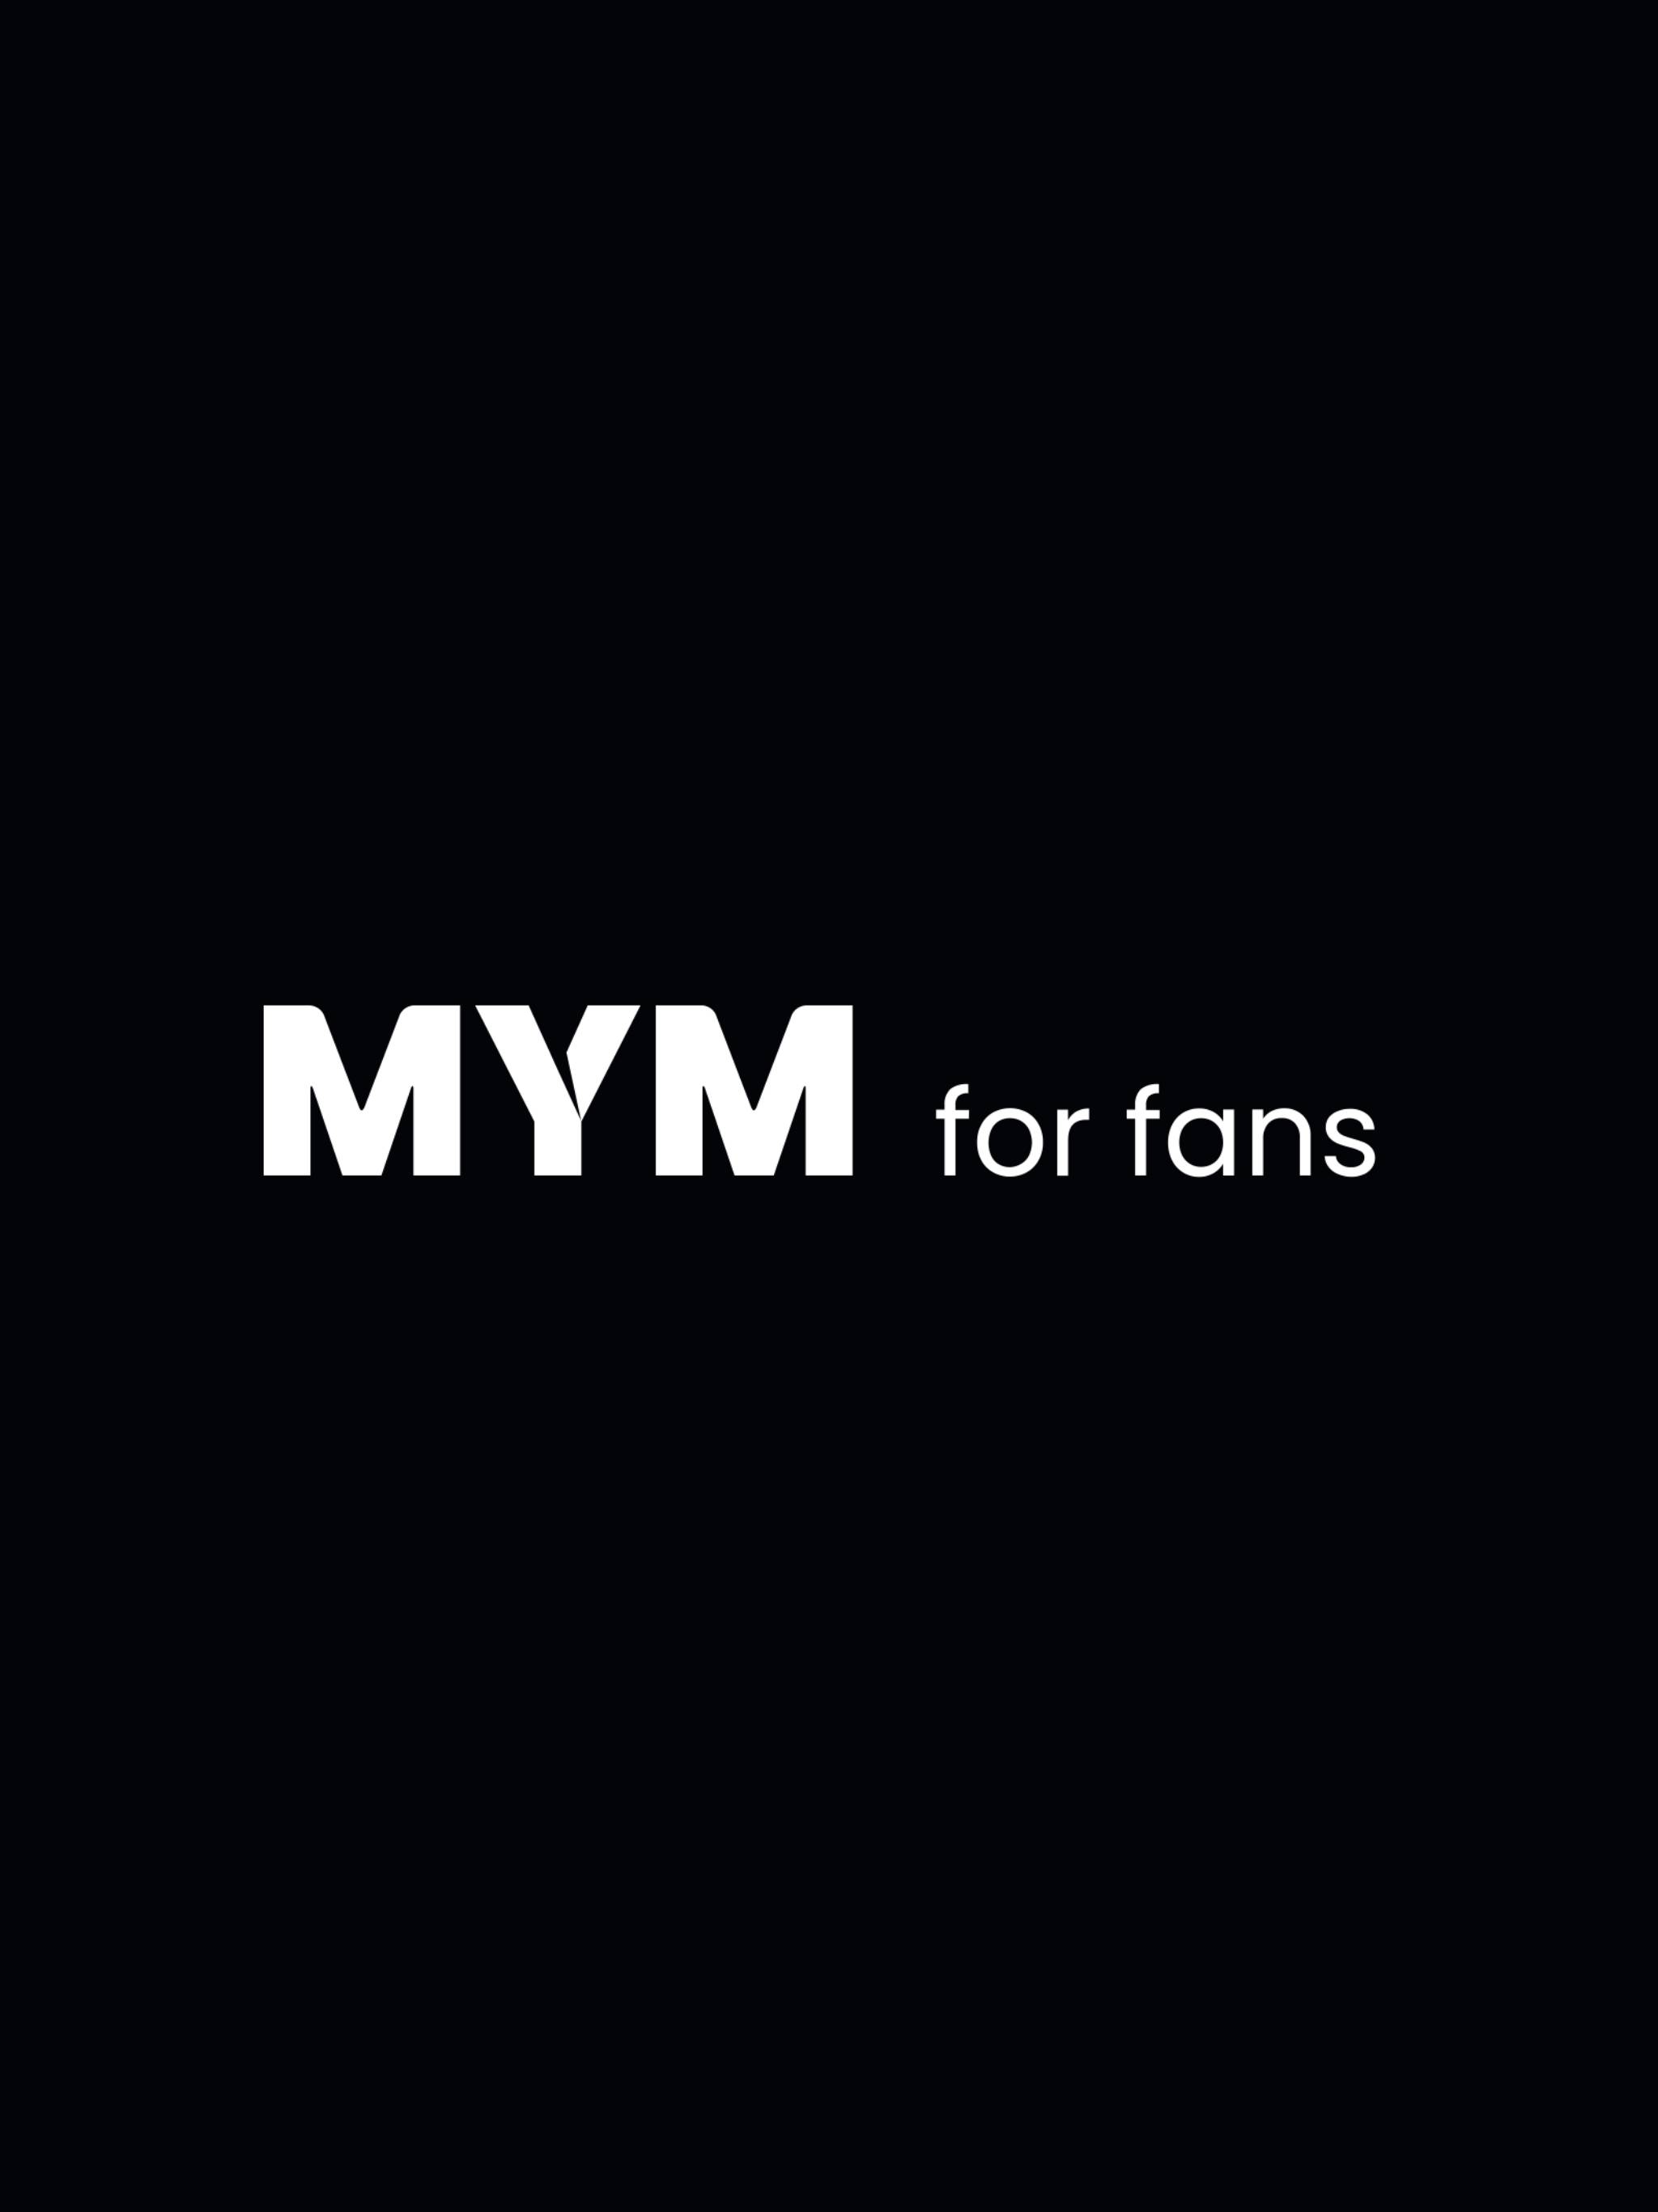 Mym.fans/supercopines